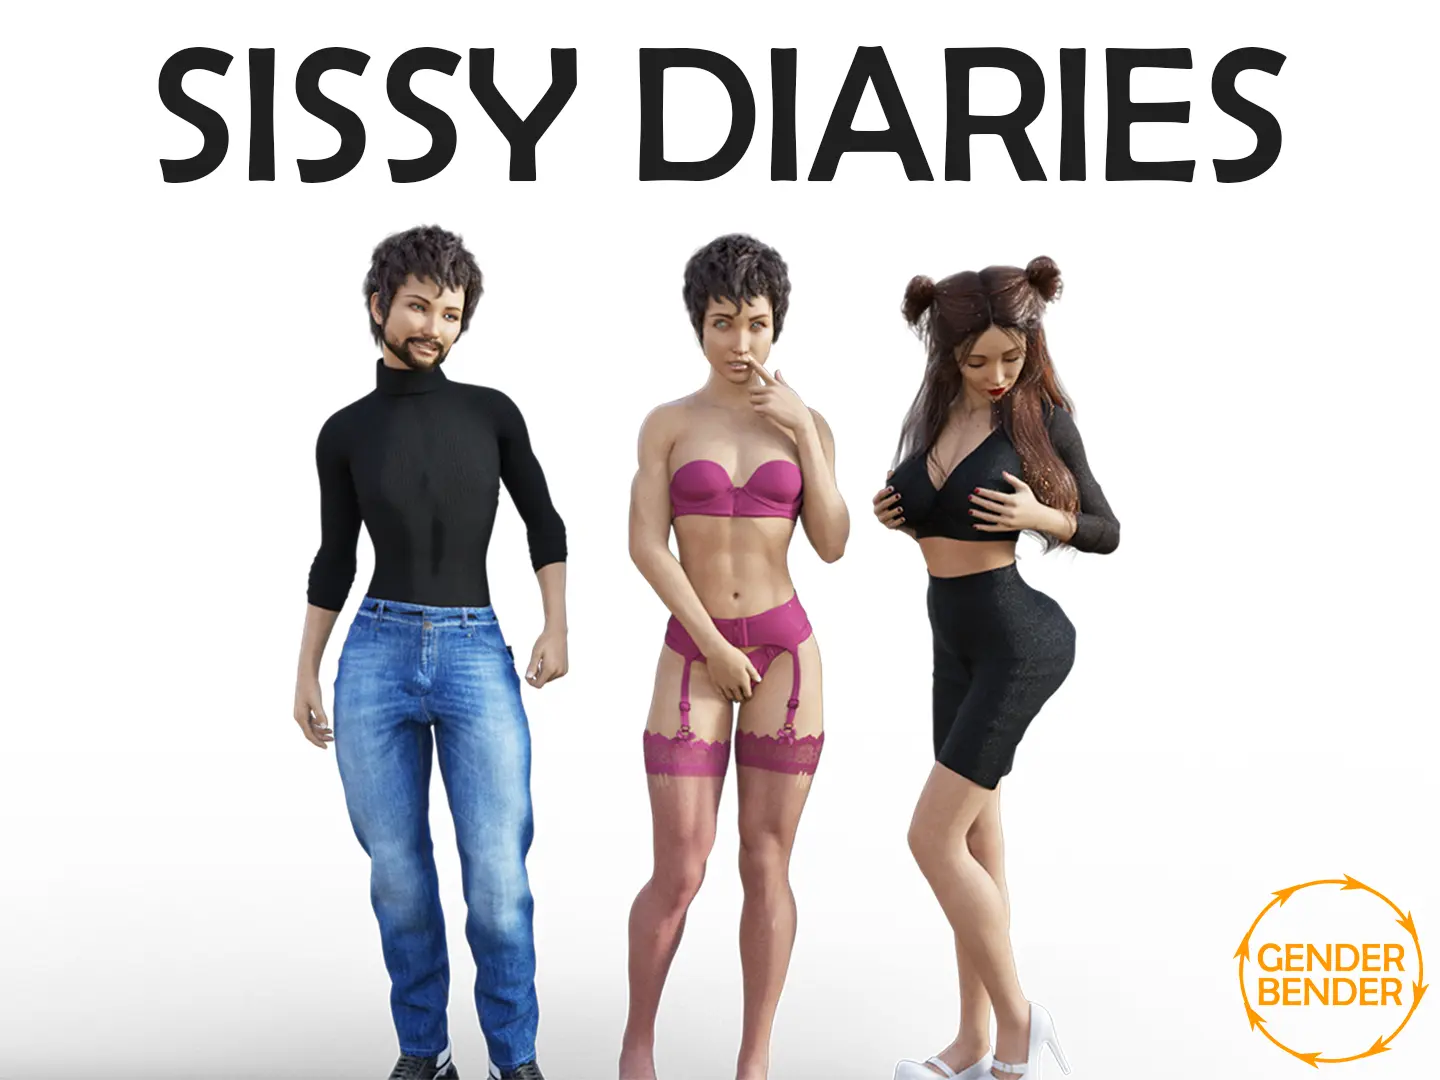 Sissy Diaries main image